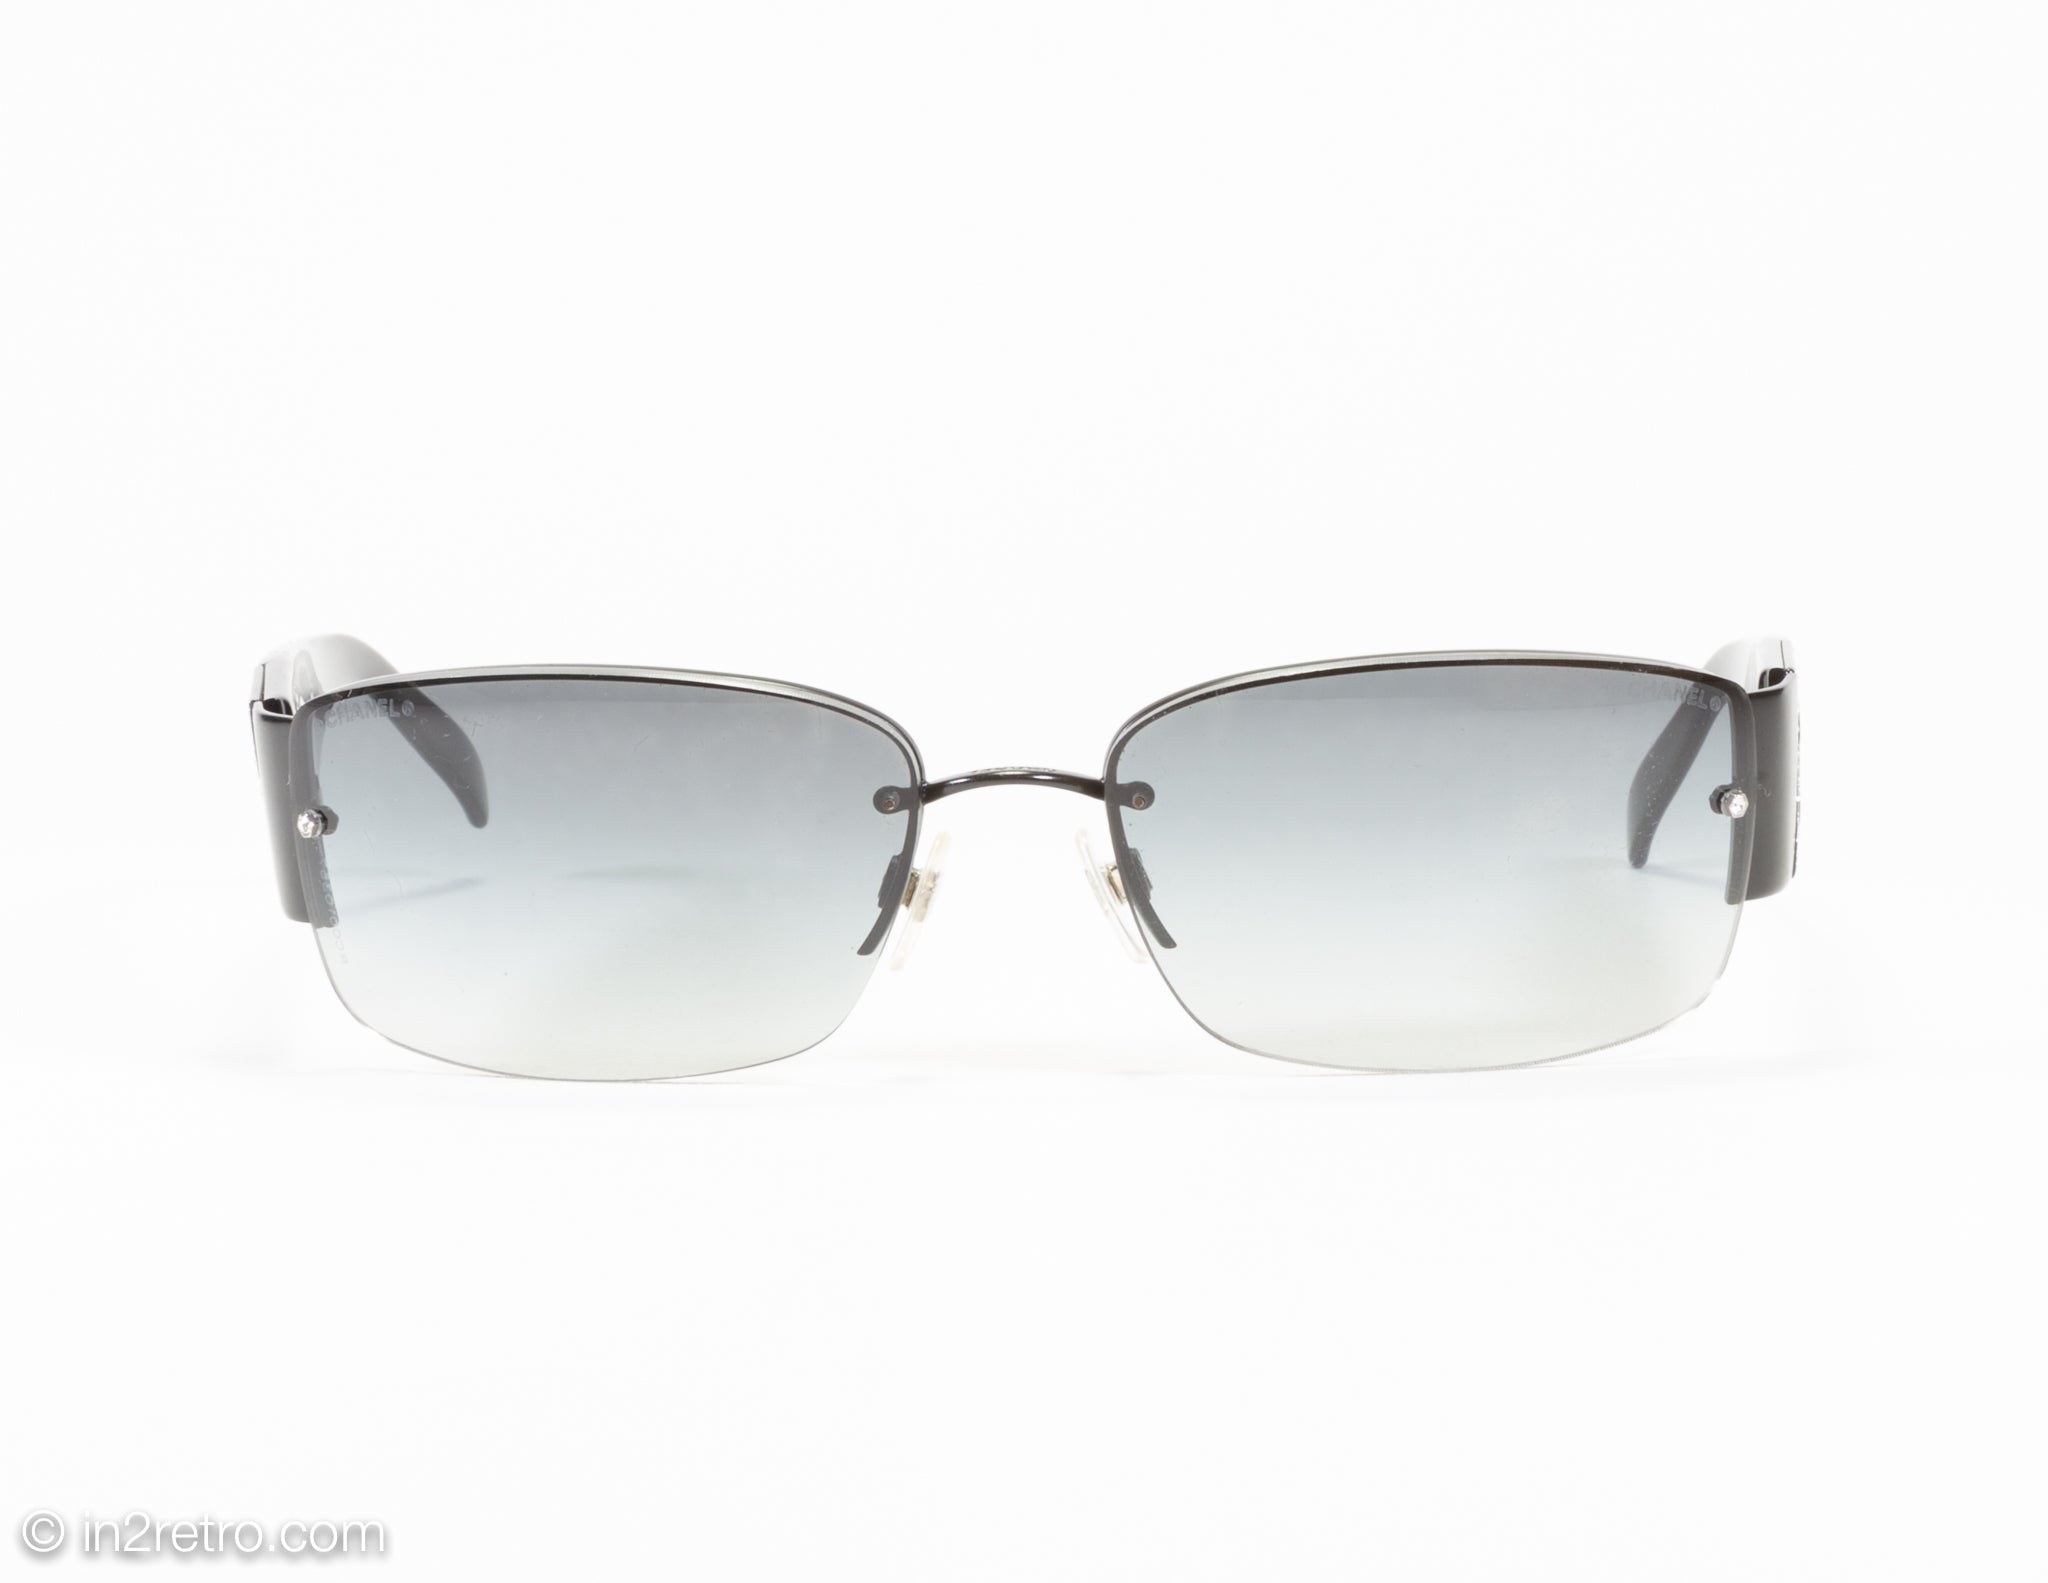 Sunglasses Chanel Black in Plastic - 21705245